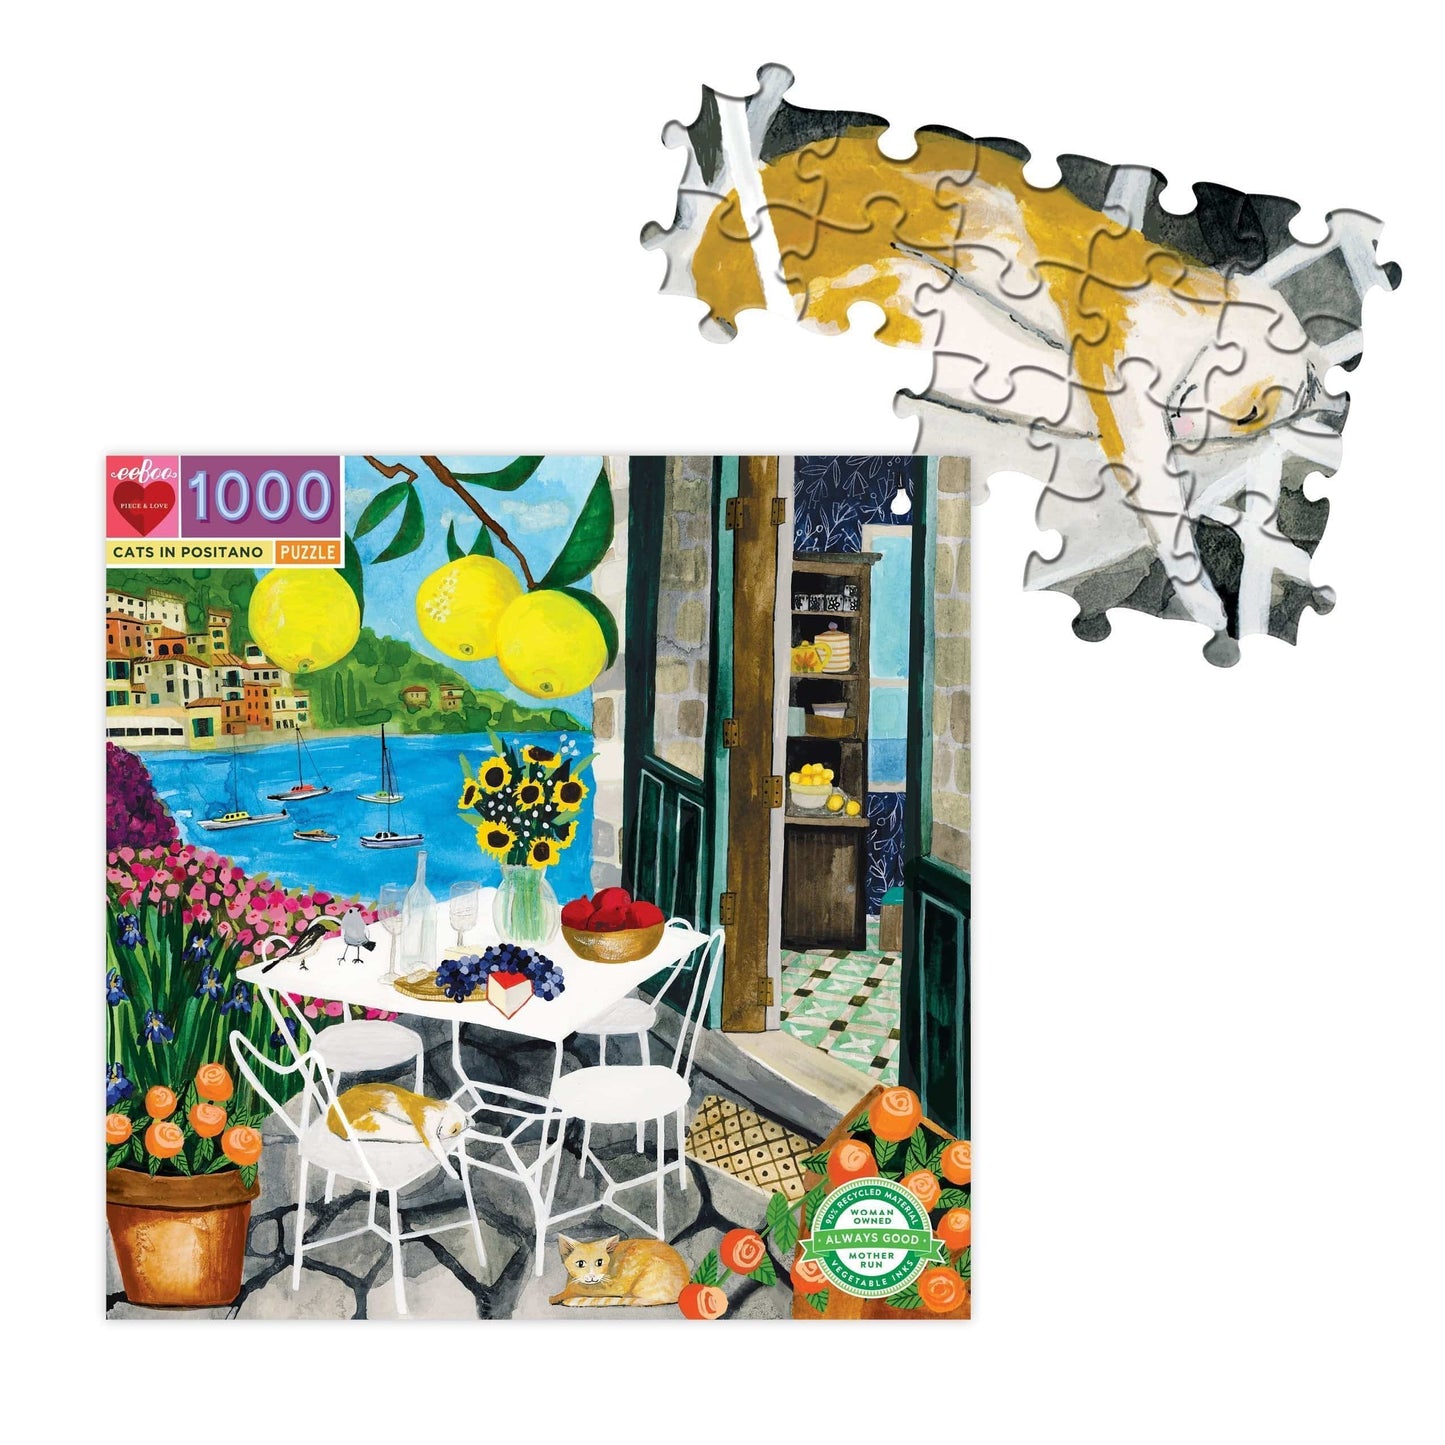 eeBoo Jigsaw Puzzle eeBoo Cats in Positano 1000 Piece Puzzle (6642737152160)